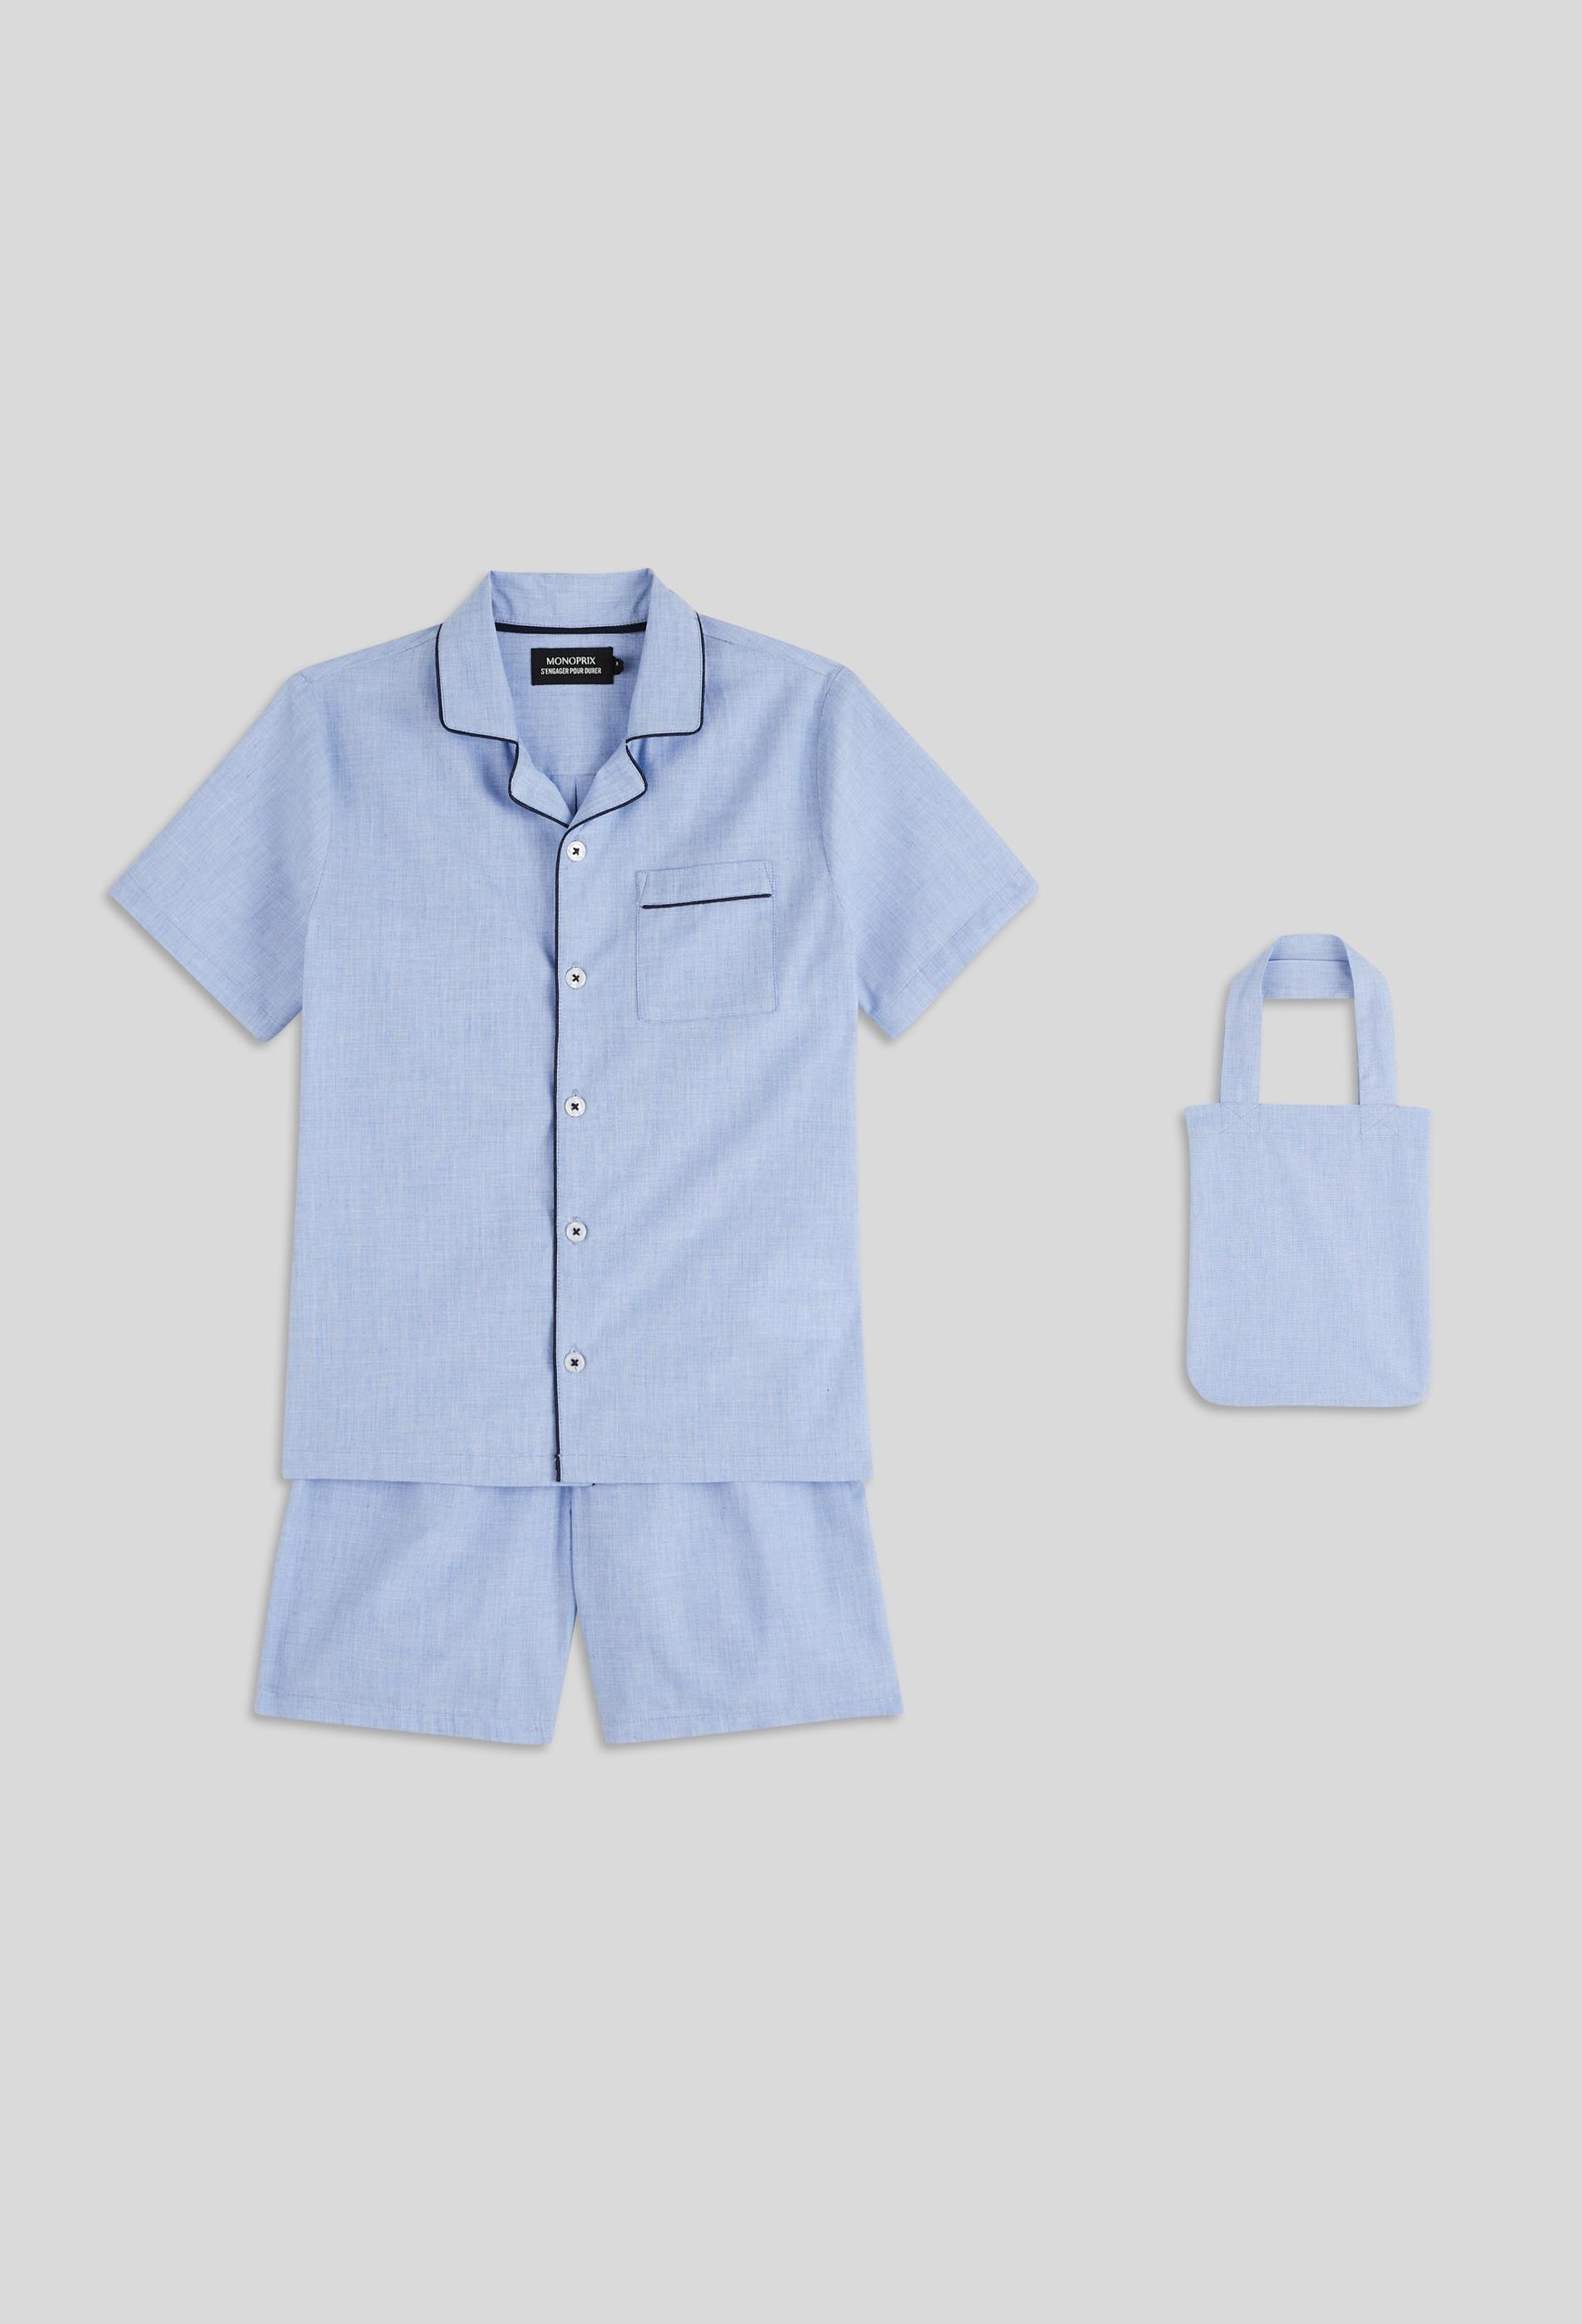 Pyjama court col chemise uni avec totebag assorti en coton BIO 3 ans bleu clair